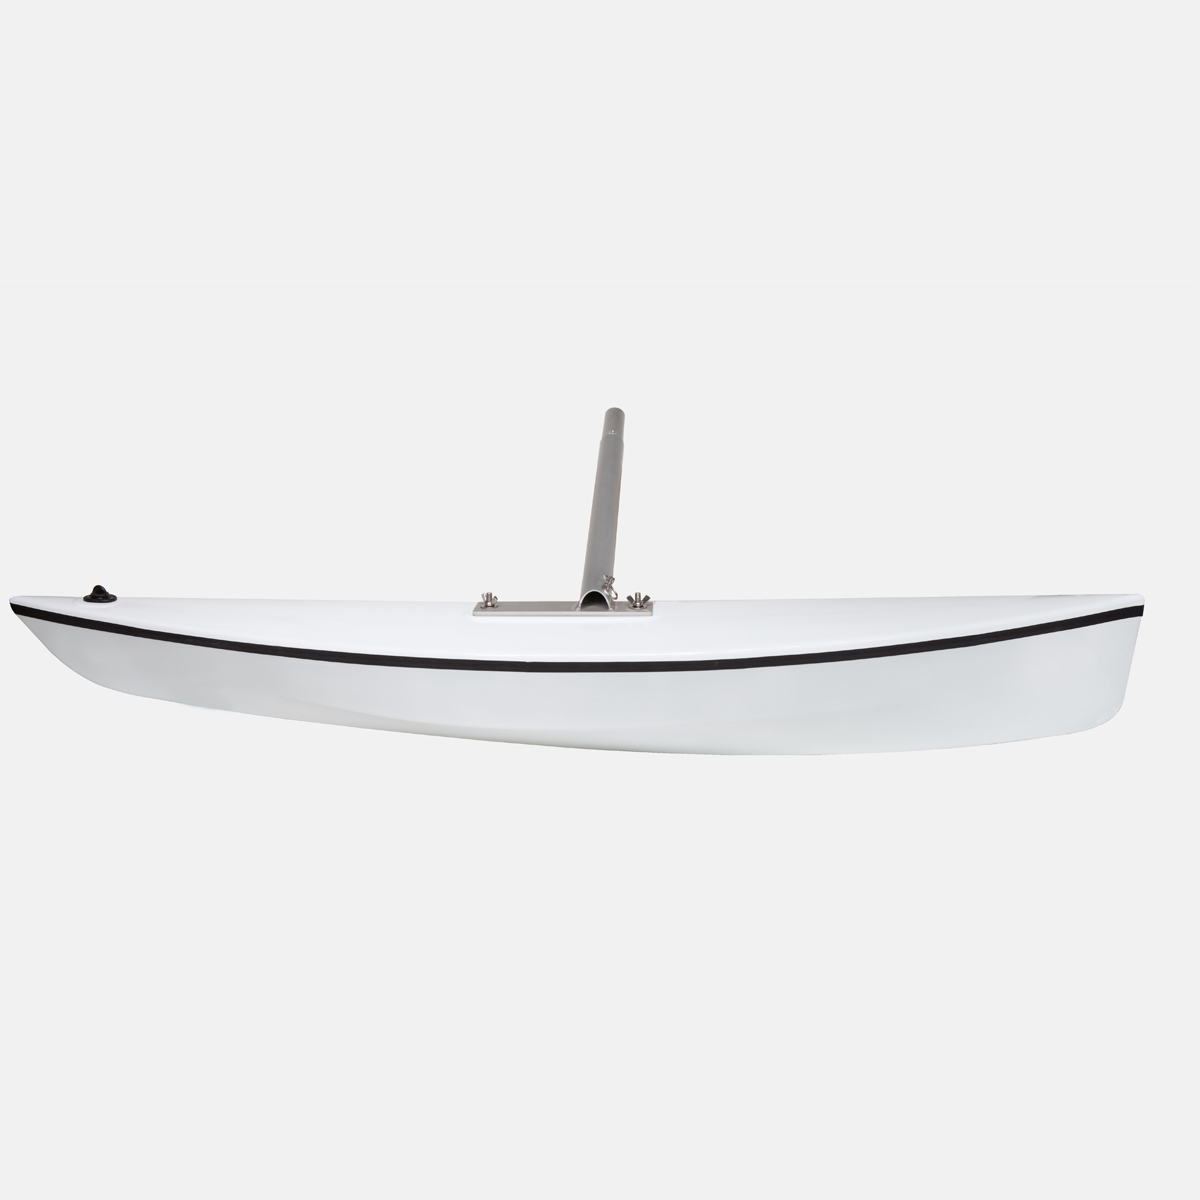 Kajak PVC aufblasbarer Ausleger Kajak Kanu Fischerboot stehend Float  günstig kaufen, Preis 35 EUR — 📦kostenloser Versand, ⭐echte Bewertungen  mit Fotos — Joom